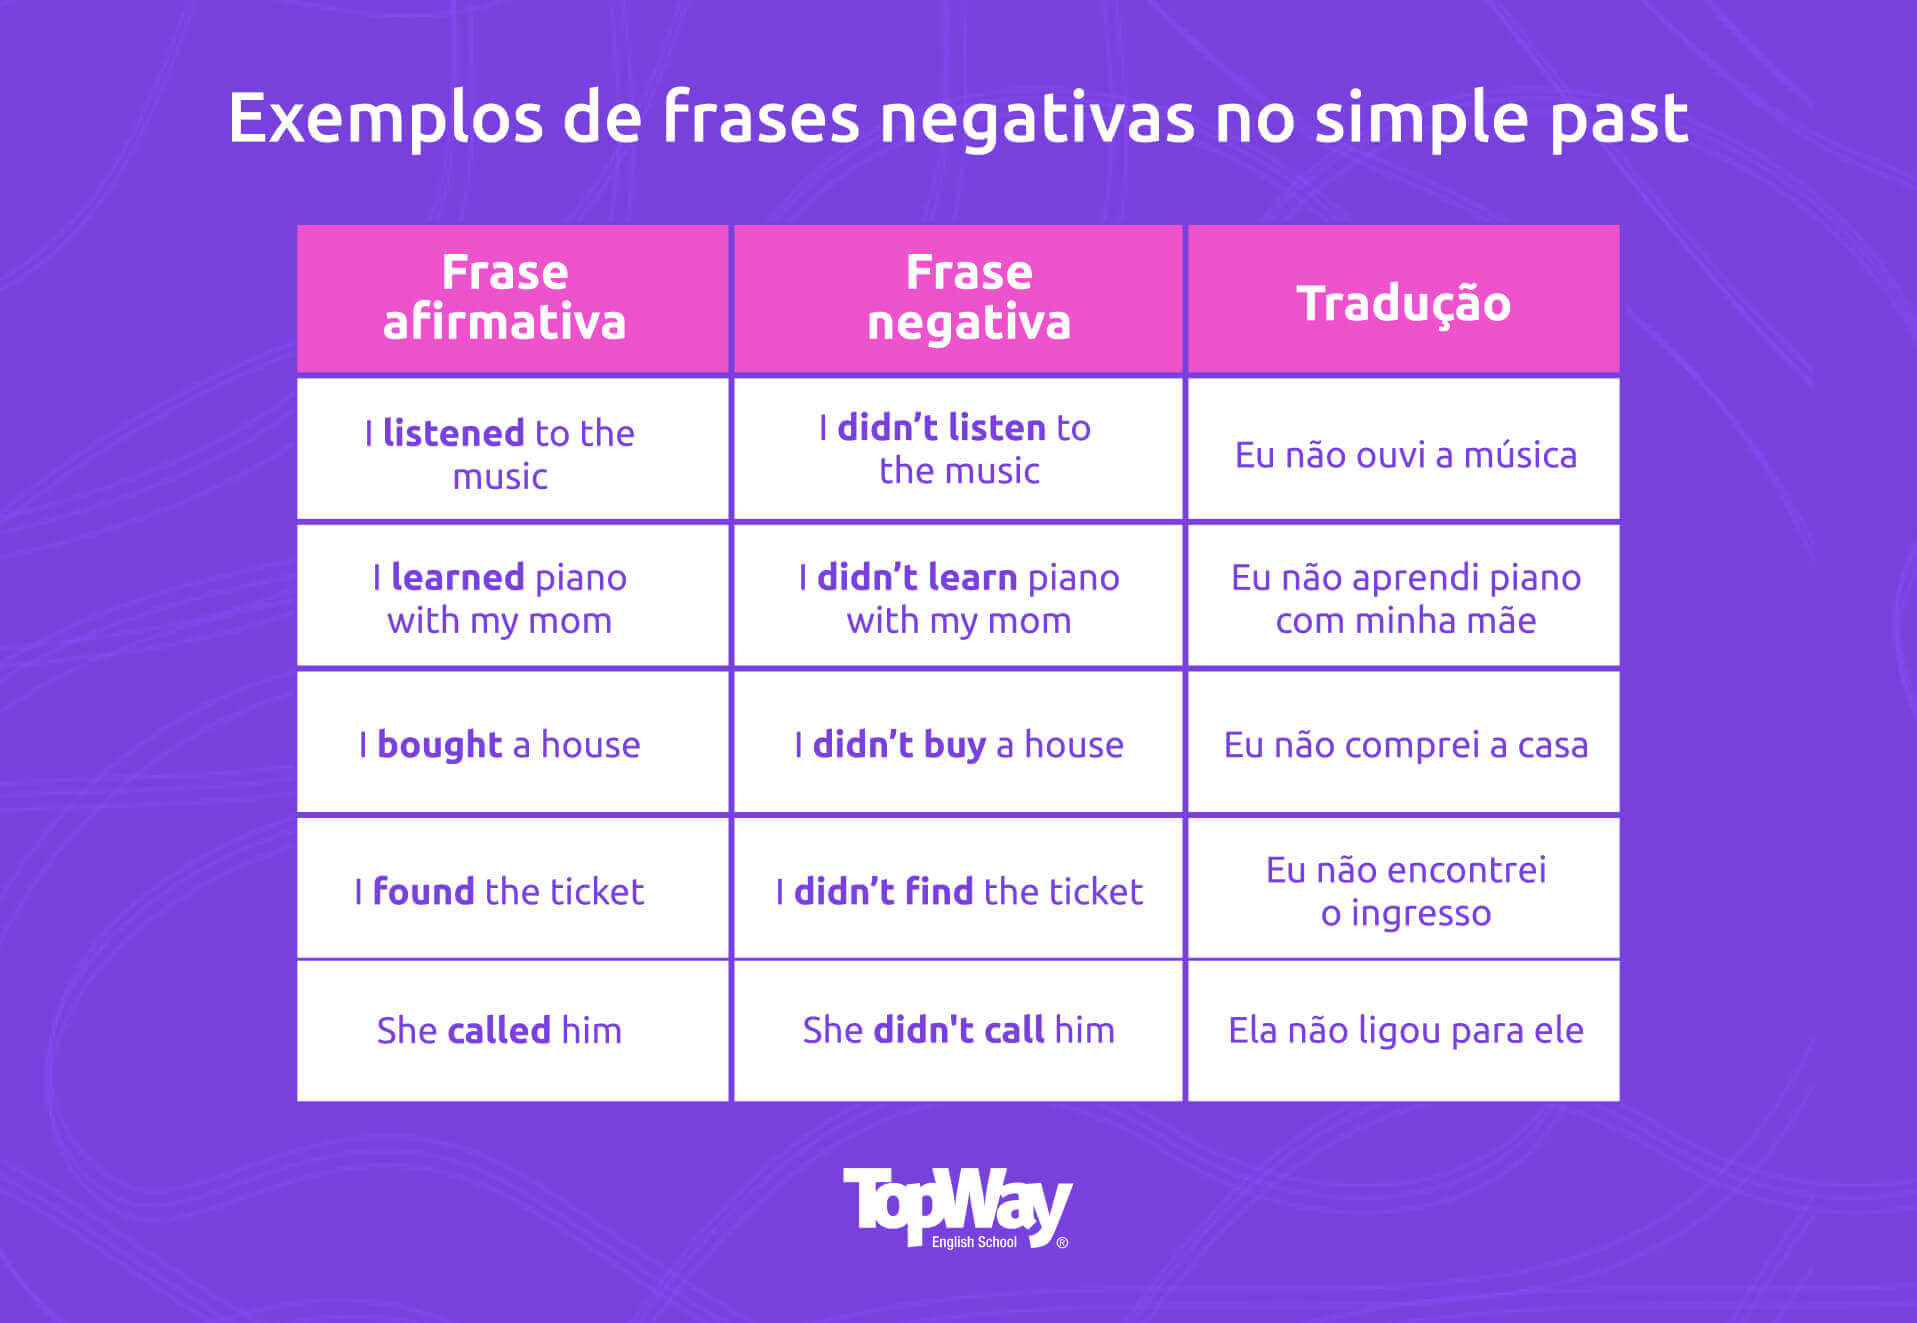 Verbos irregulares em inglês  Explicações, exemplos e exercício